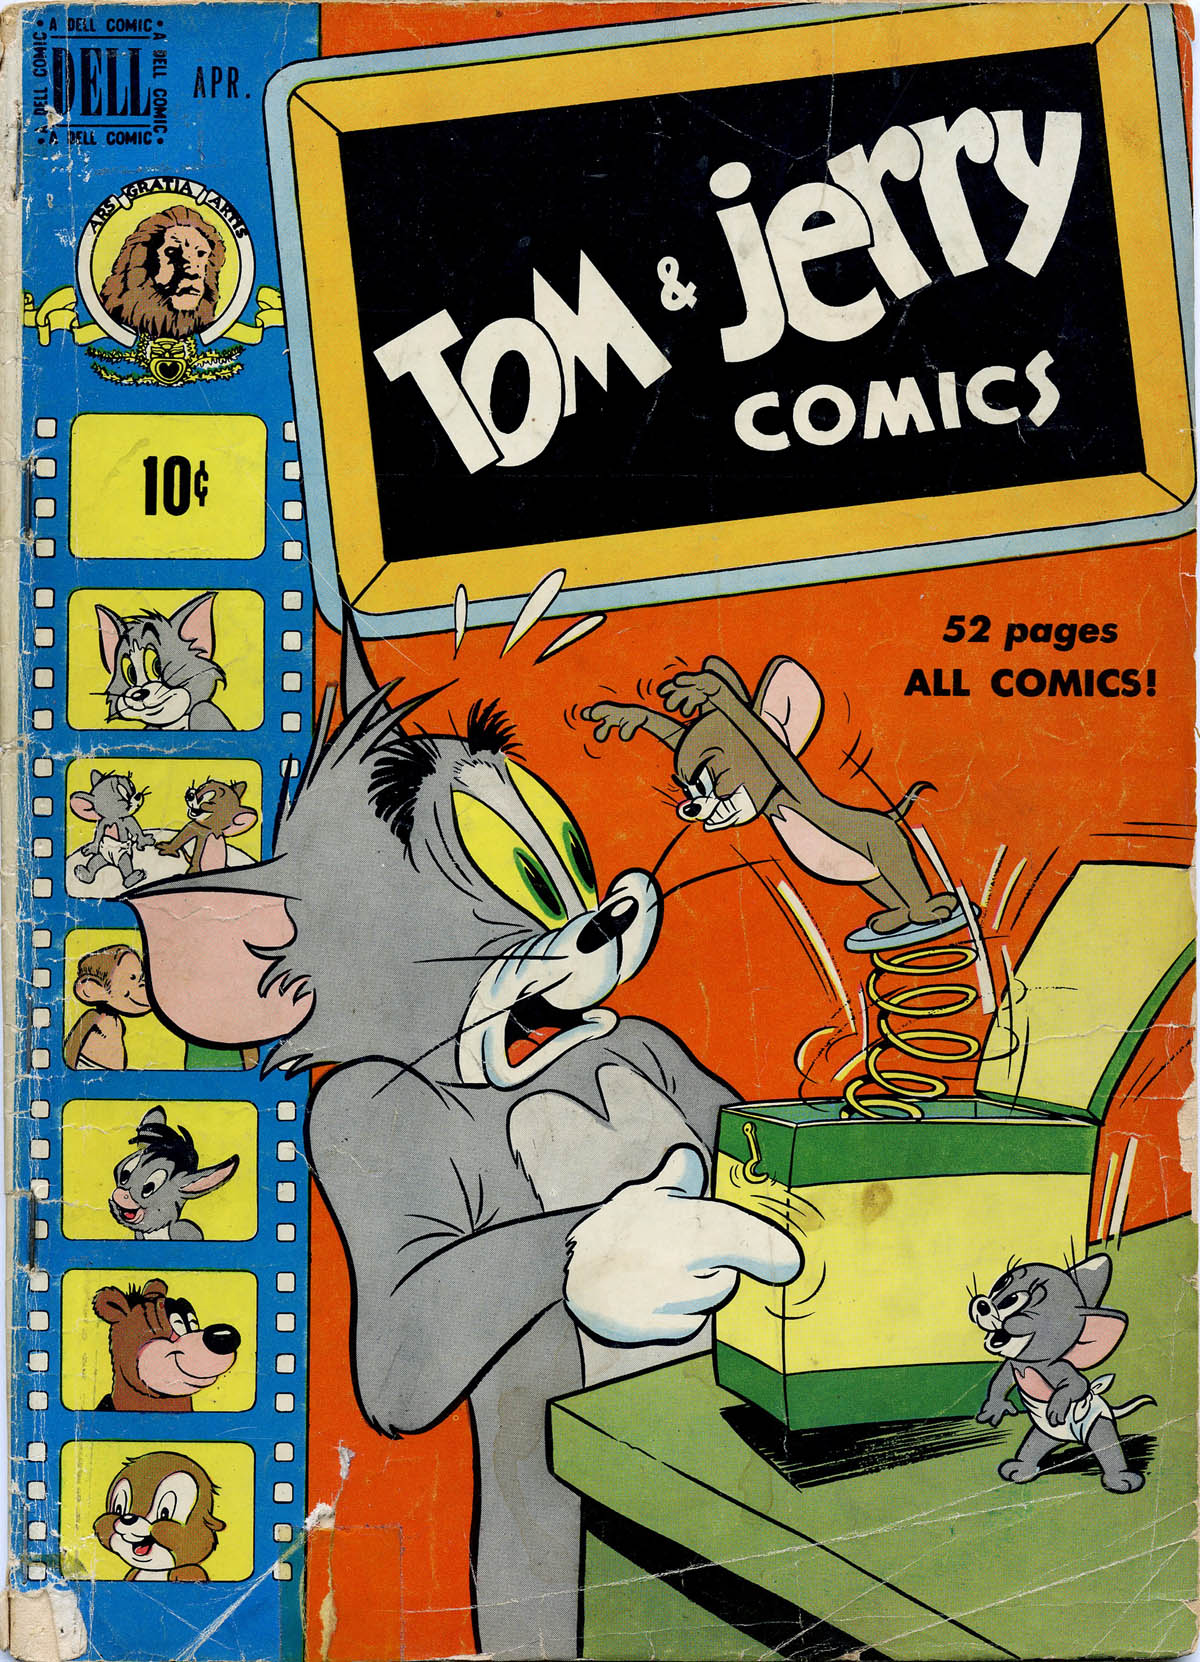 Tom & Jerry Comics #069 | Read All Comics Online